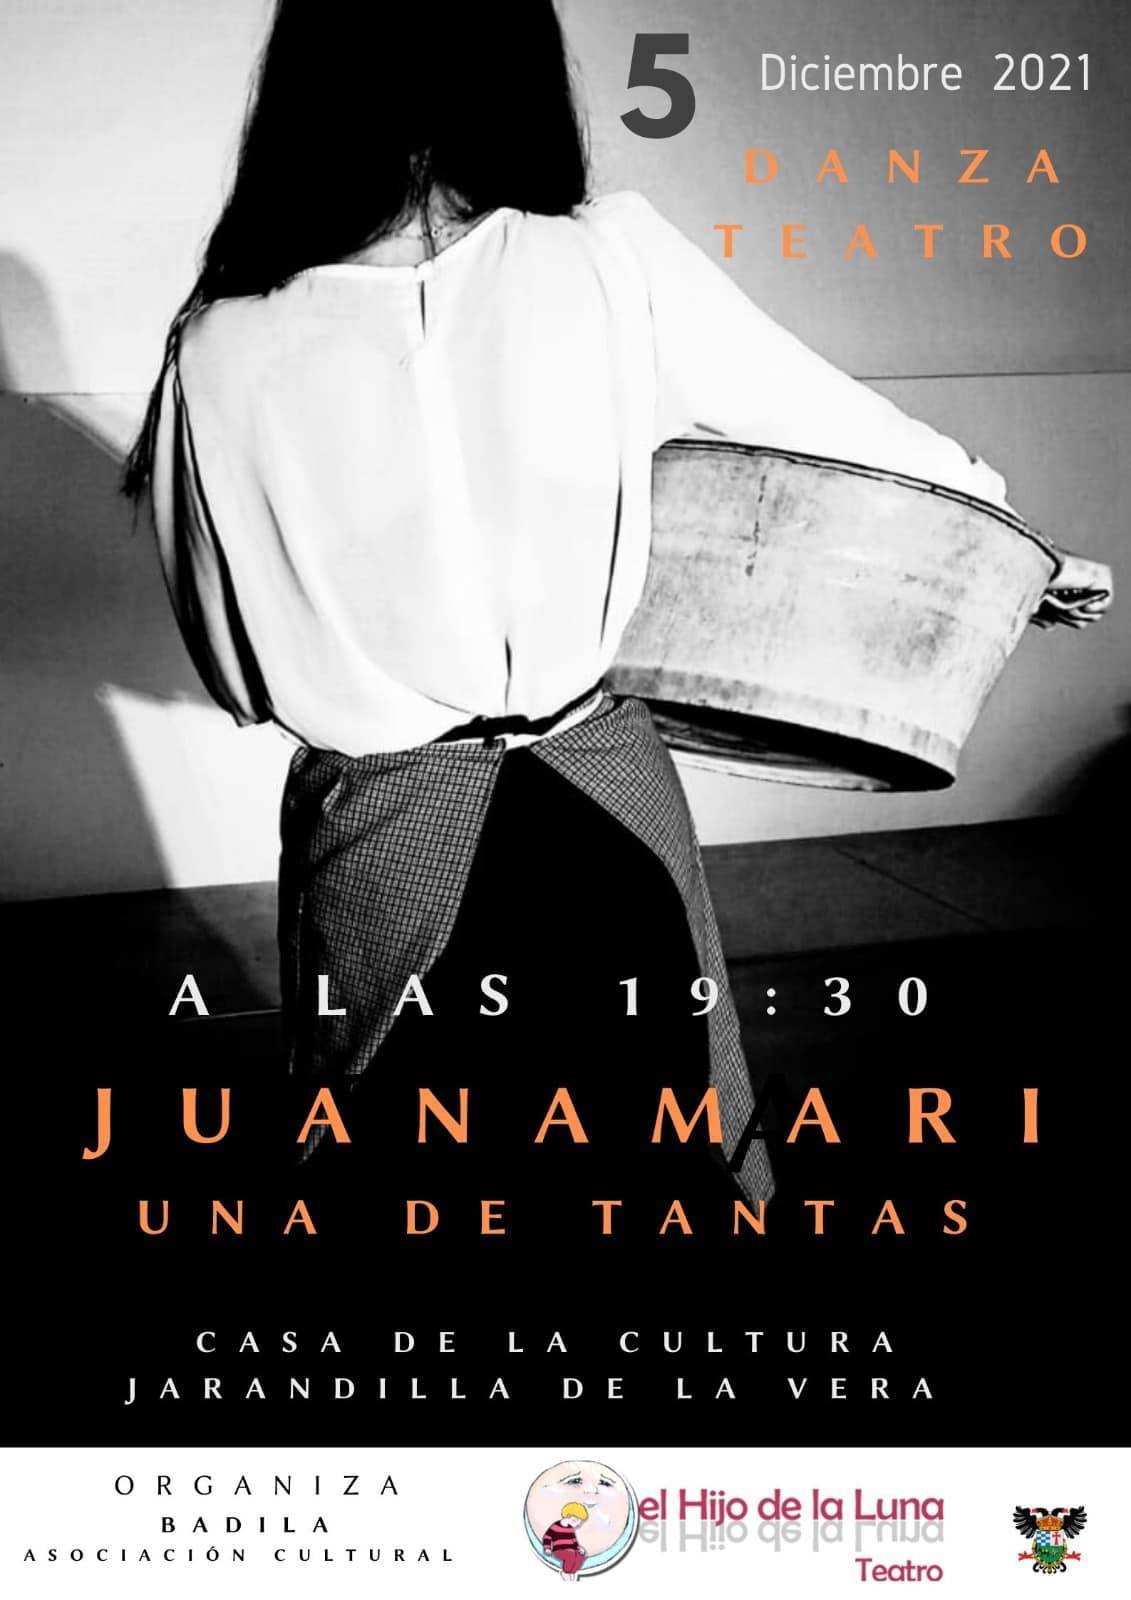 'Juanamari una de tantas' (2021) - Jarandilla de la Vera (Cáceres)